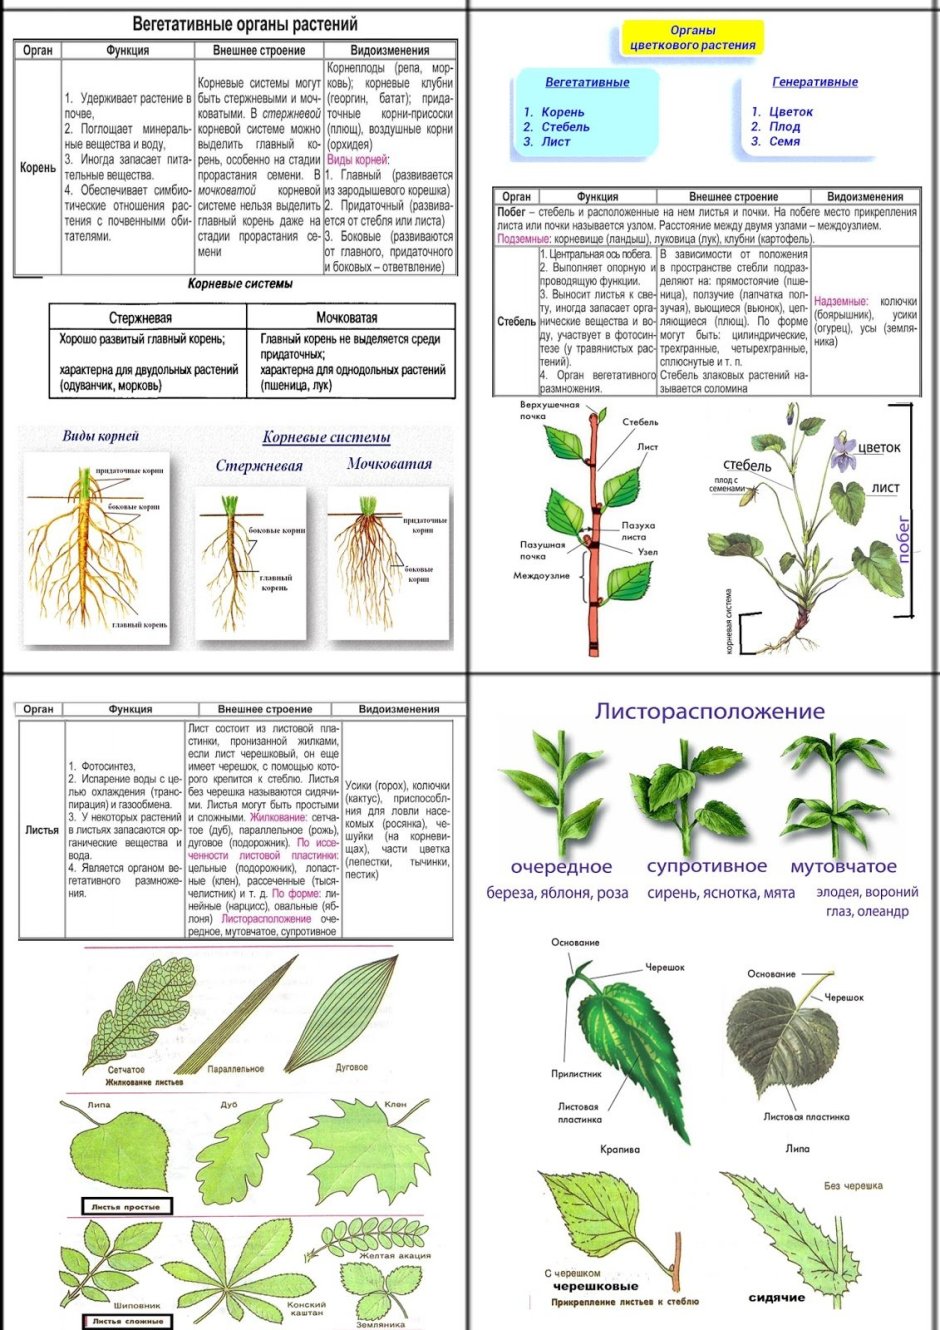 Вегетативные органы растений и их функции